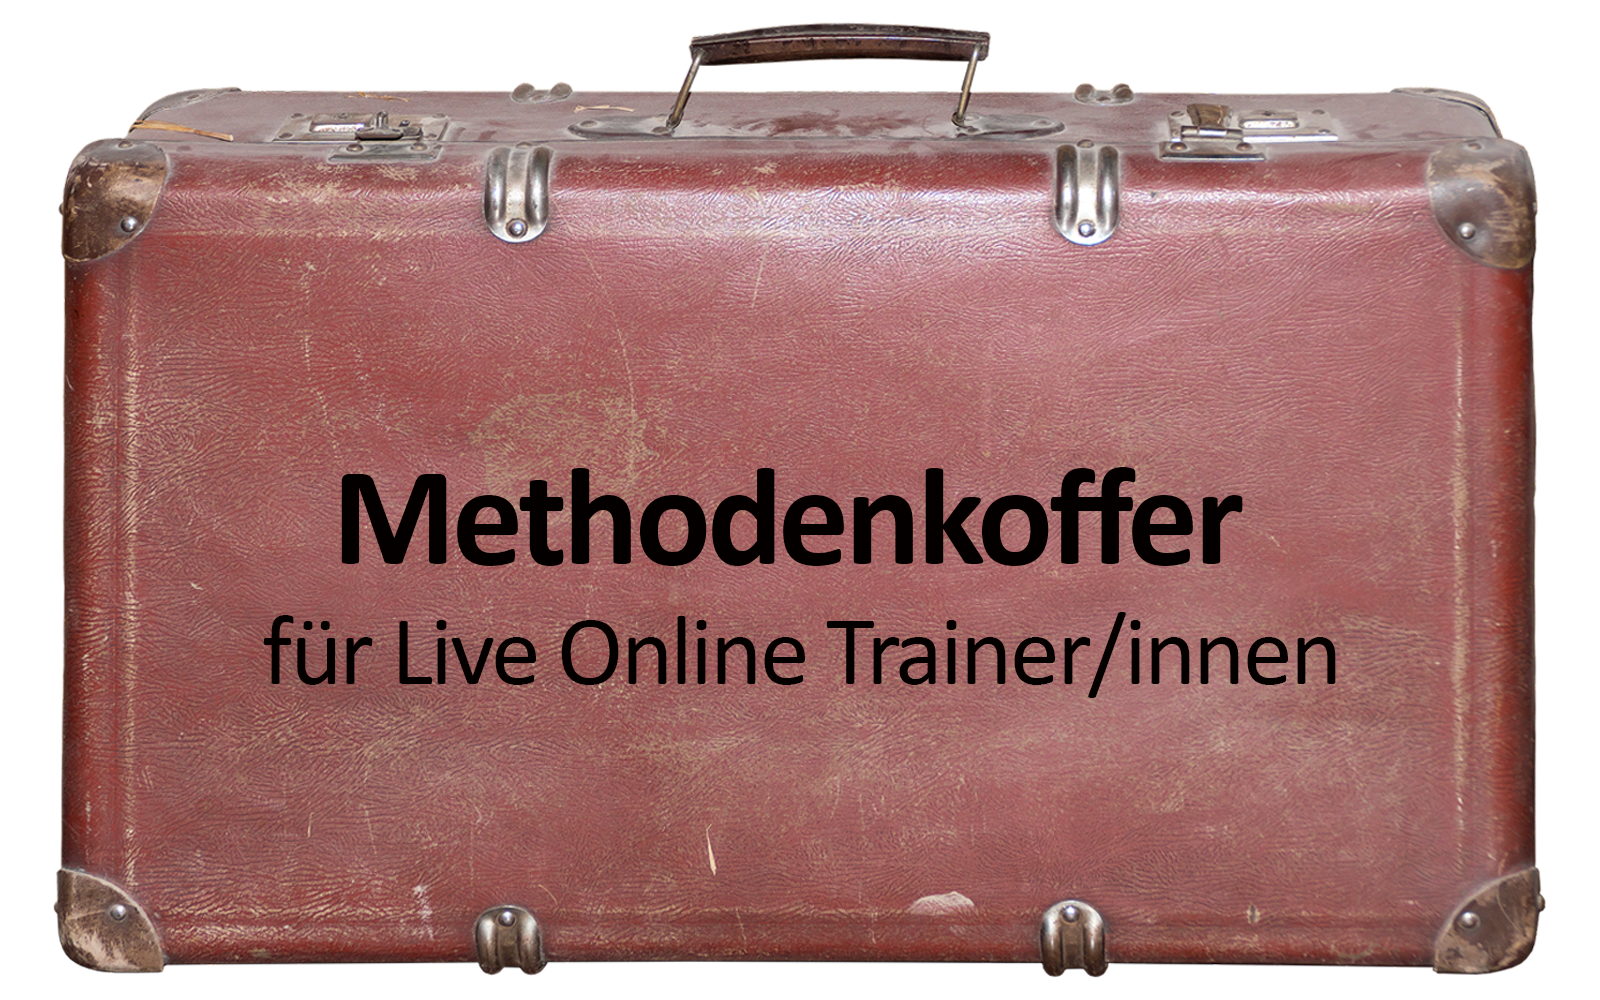 Methodenkoffer für Live Online Trainer